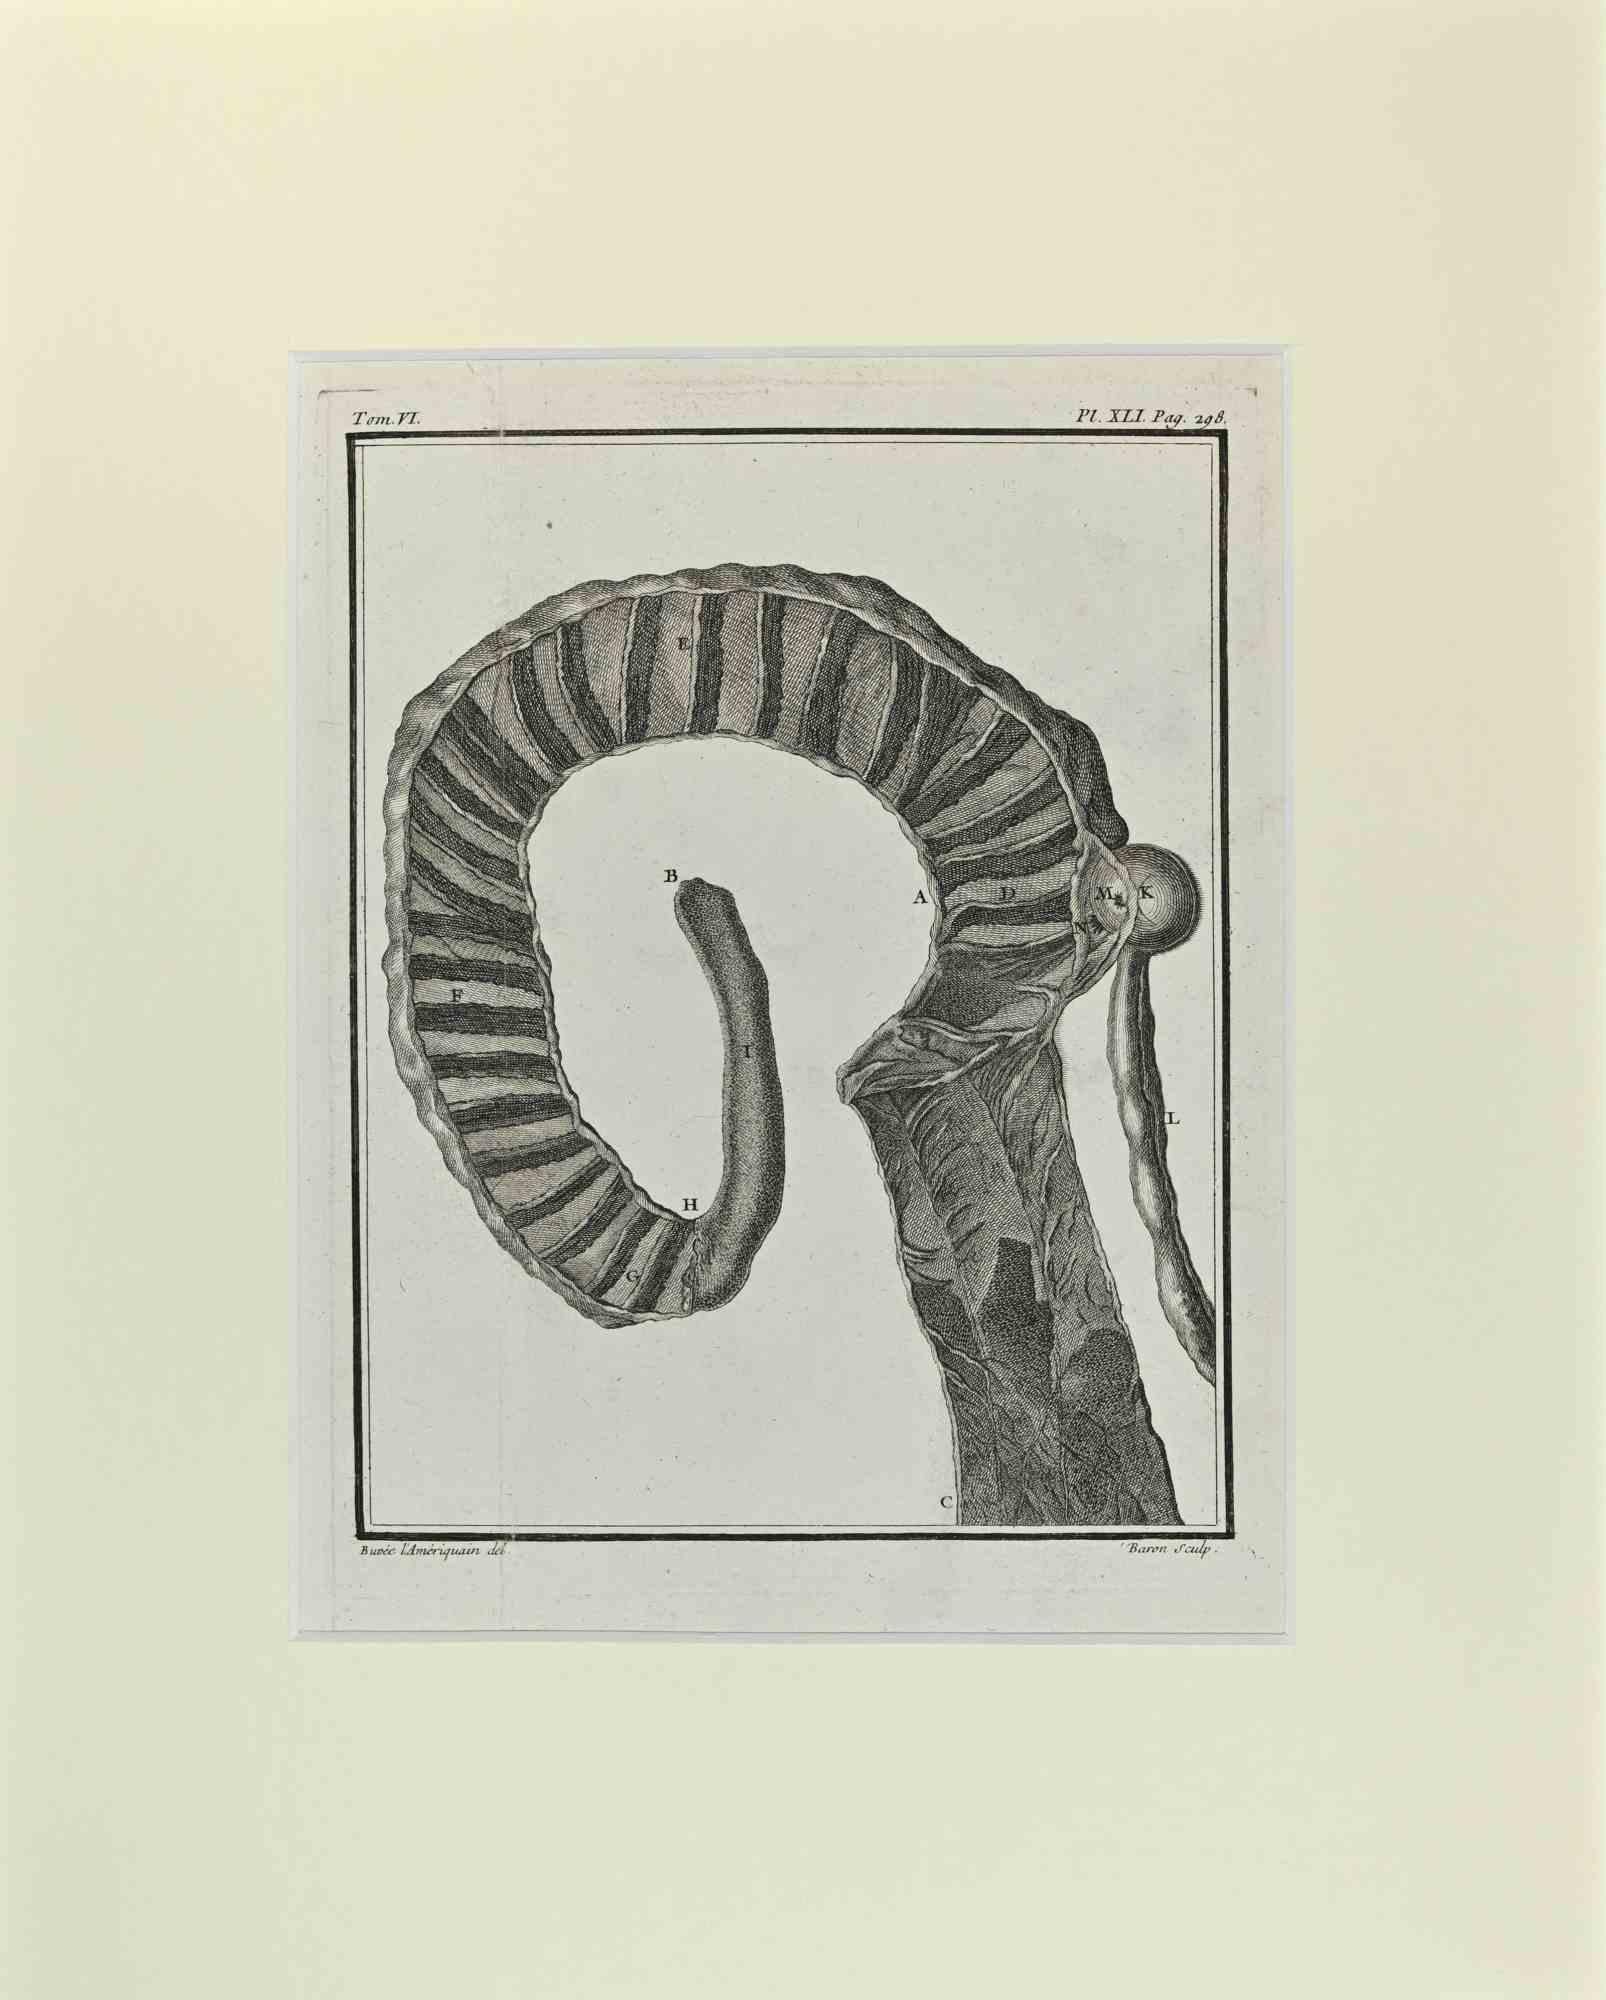 Das Hornskelett ist ein Kunstwerk von Buvée l'Américain aus dem Jahr 1771.  

Radierung B./W. Druck auf Elfenbeinpapier. Signiert auf der Platte am unteren linken Rand.

Das Werk ist auf Karton geklebt. Abmessungen insgesamt: 35x28 cm.

Das